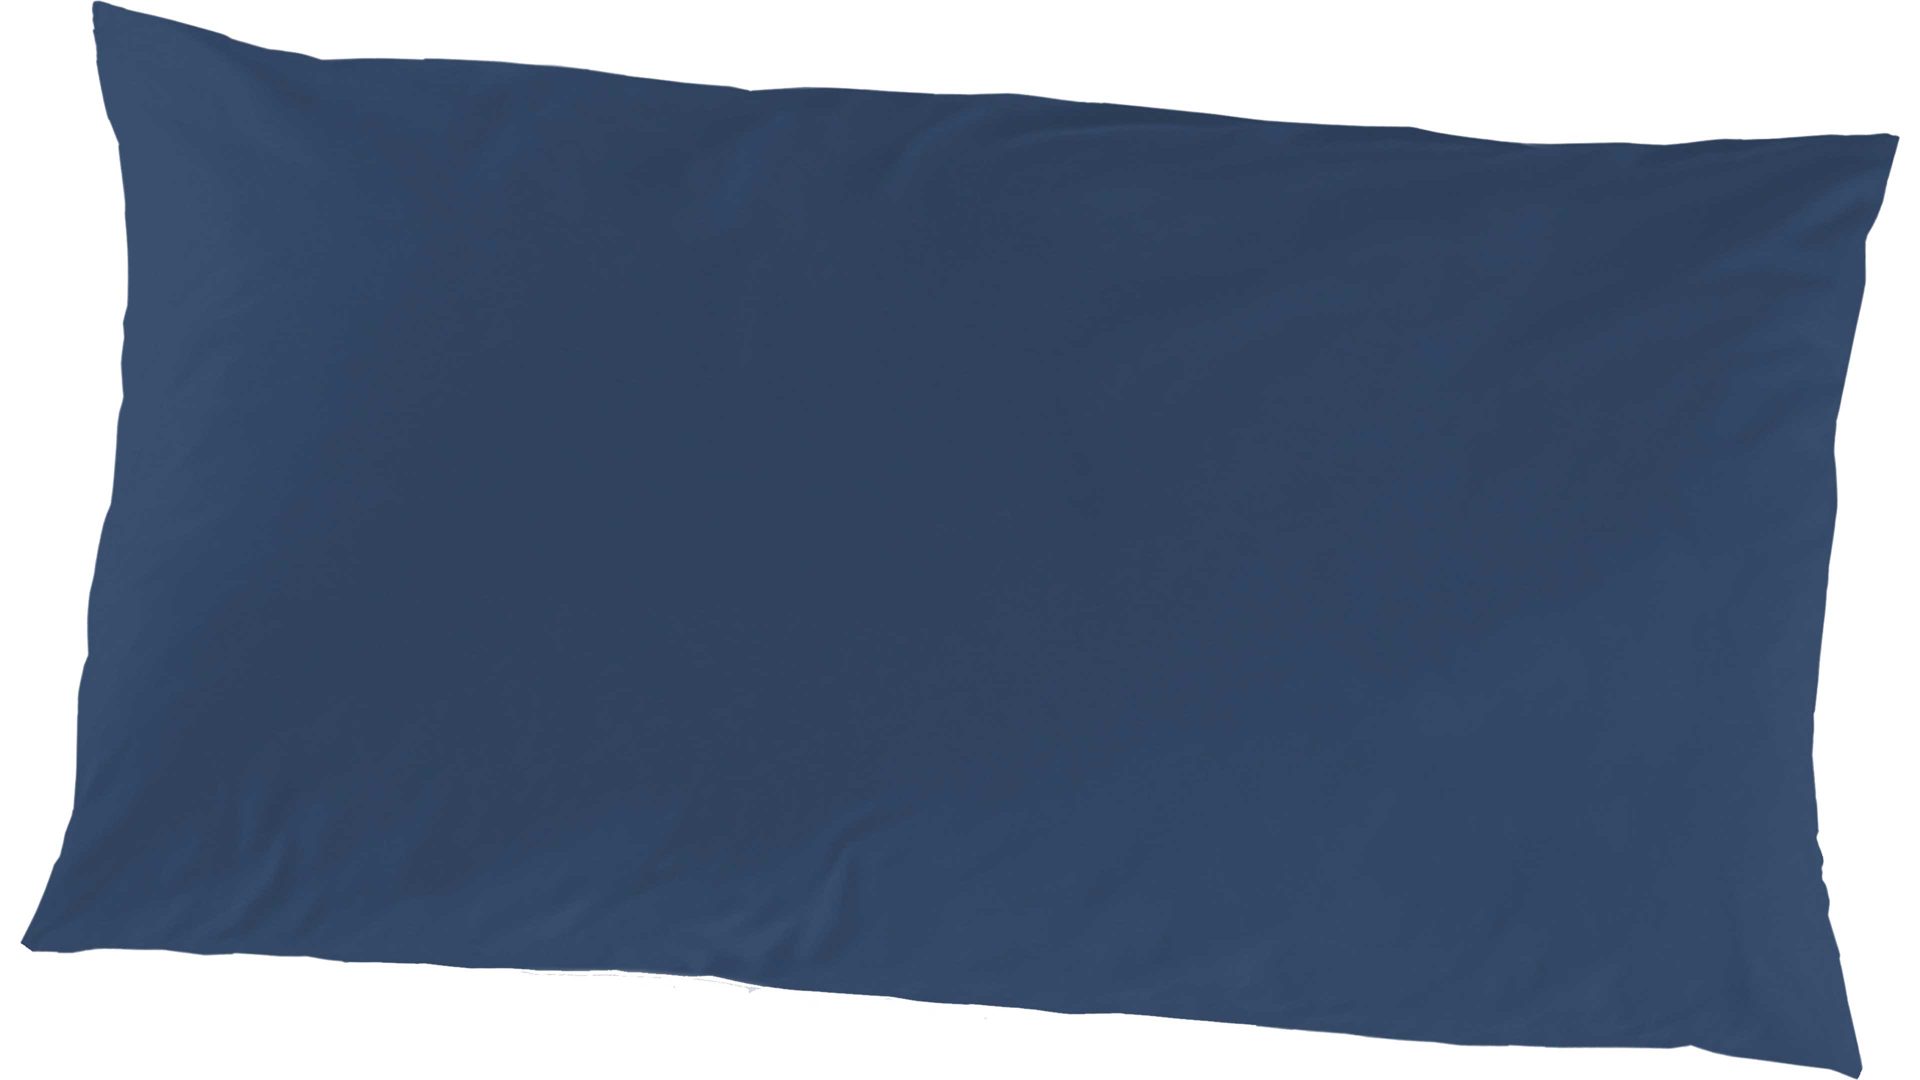 Kissenbezug /-hülle H.g. hahn haustextilien aus Stoff in Dunkelblau HAHN Luxus-Satin-Kopfkissenbezug Sempre petrolfarbener Baumwollsatin - ca. 40 x 80 cm